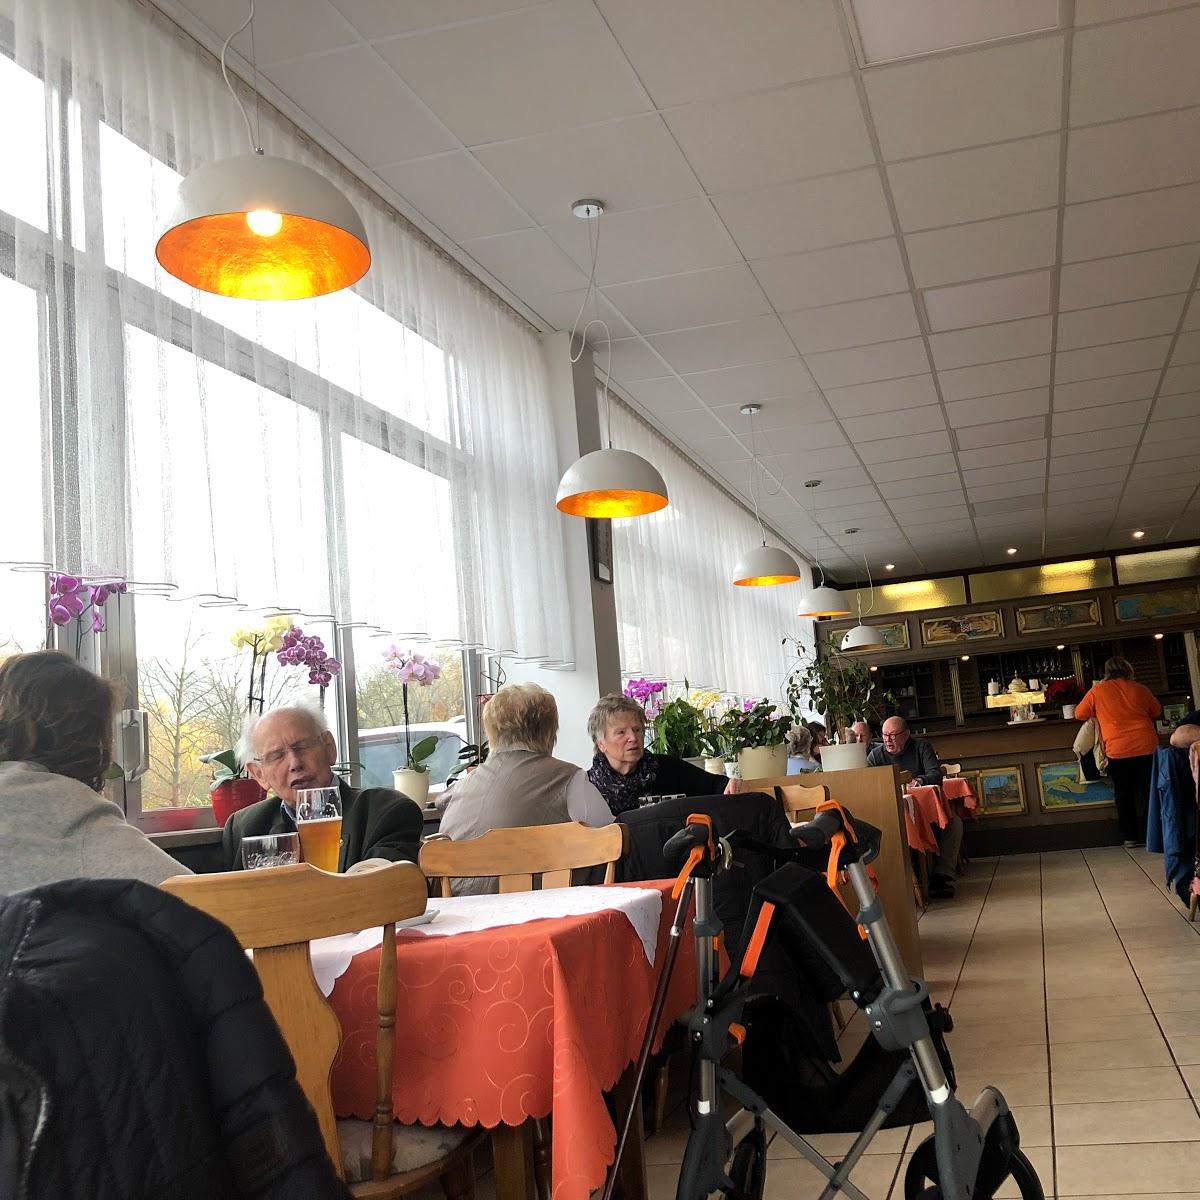 Restaurant "Großmarkthalle Tominac" in Heidelberg